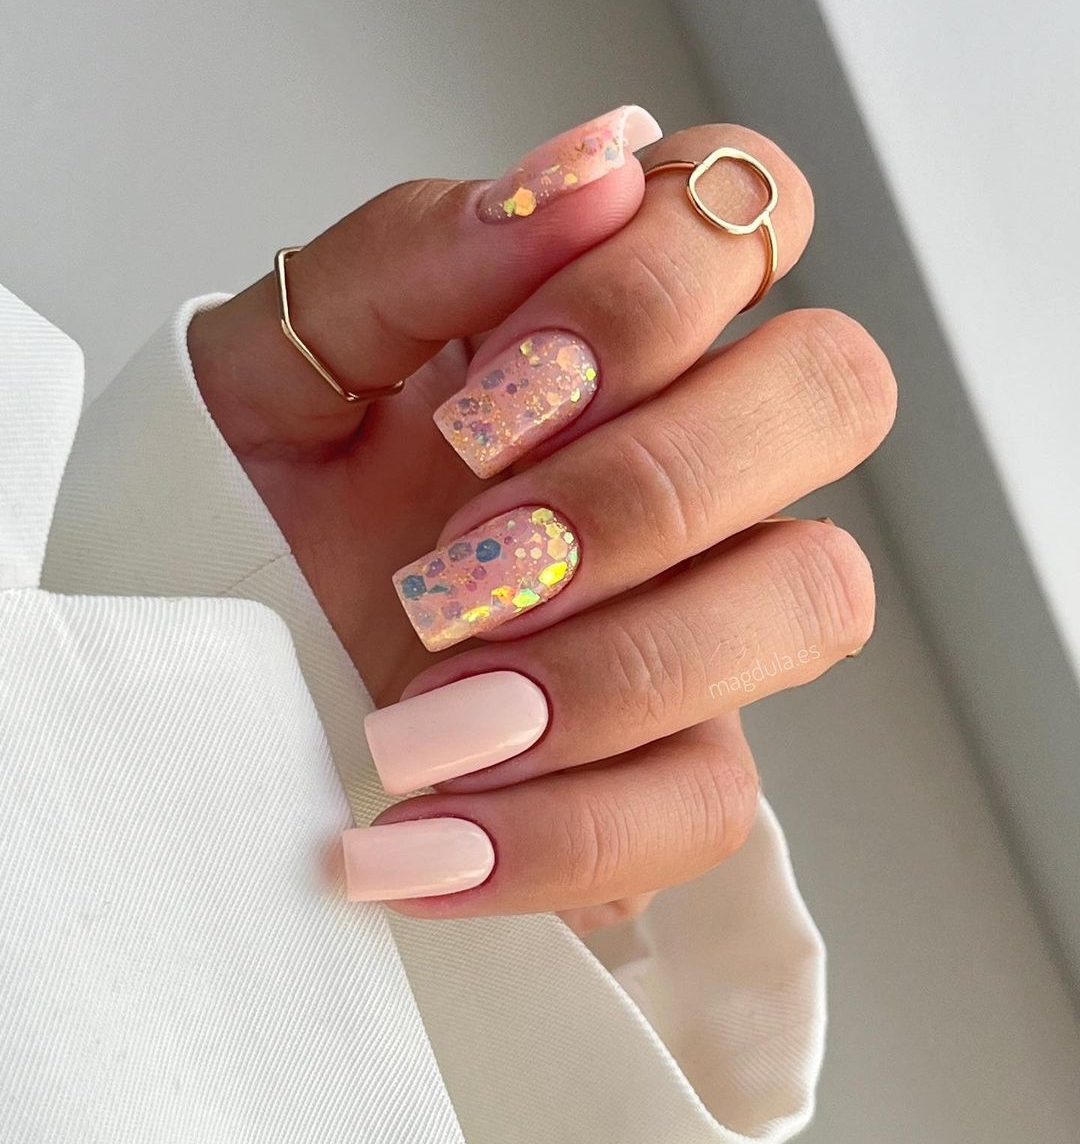 Vierkante nude nagels met glitter